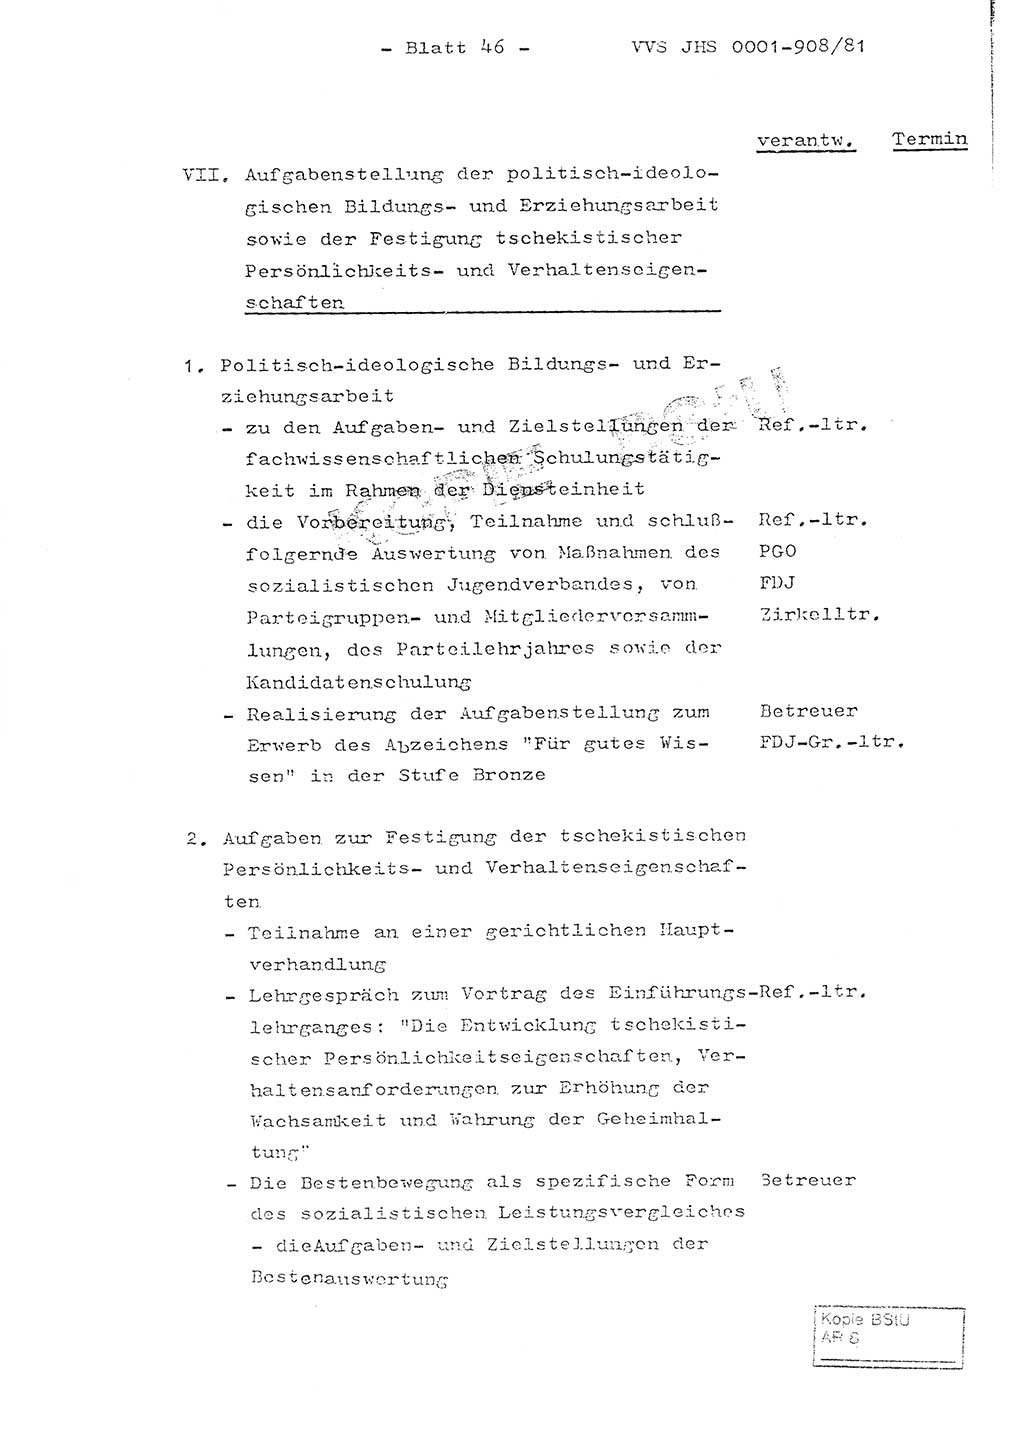 Fachschulabschlußarbeit Oberleutnant Wolfgang Wittmann (Abt. ⅩⅣ), Ministerium für Staatssicherheit (MfS) [Deutsche Demokratische Republik (DDR)], Juristische Hochschule (JHS), Vertrauliche Verschlußsache (VVS) o001-908/82, Potsdam 1982, Blatt 46 (FS-Abschl.-Arb. MfS DDR JHS VVS o001-908/82 1982, Bl. 46)